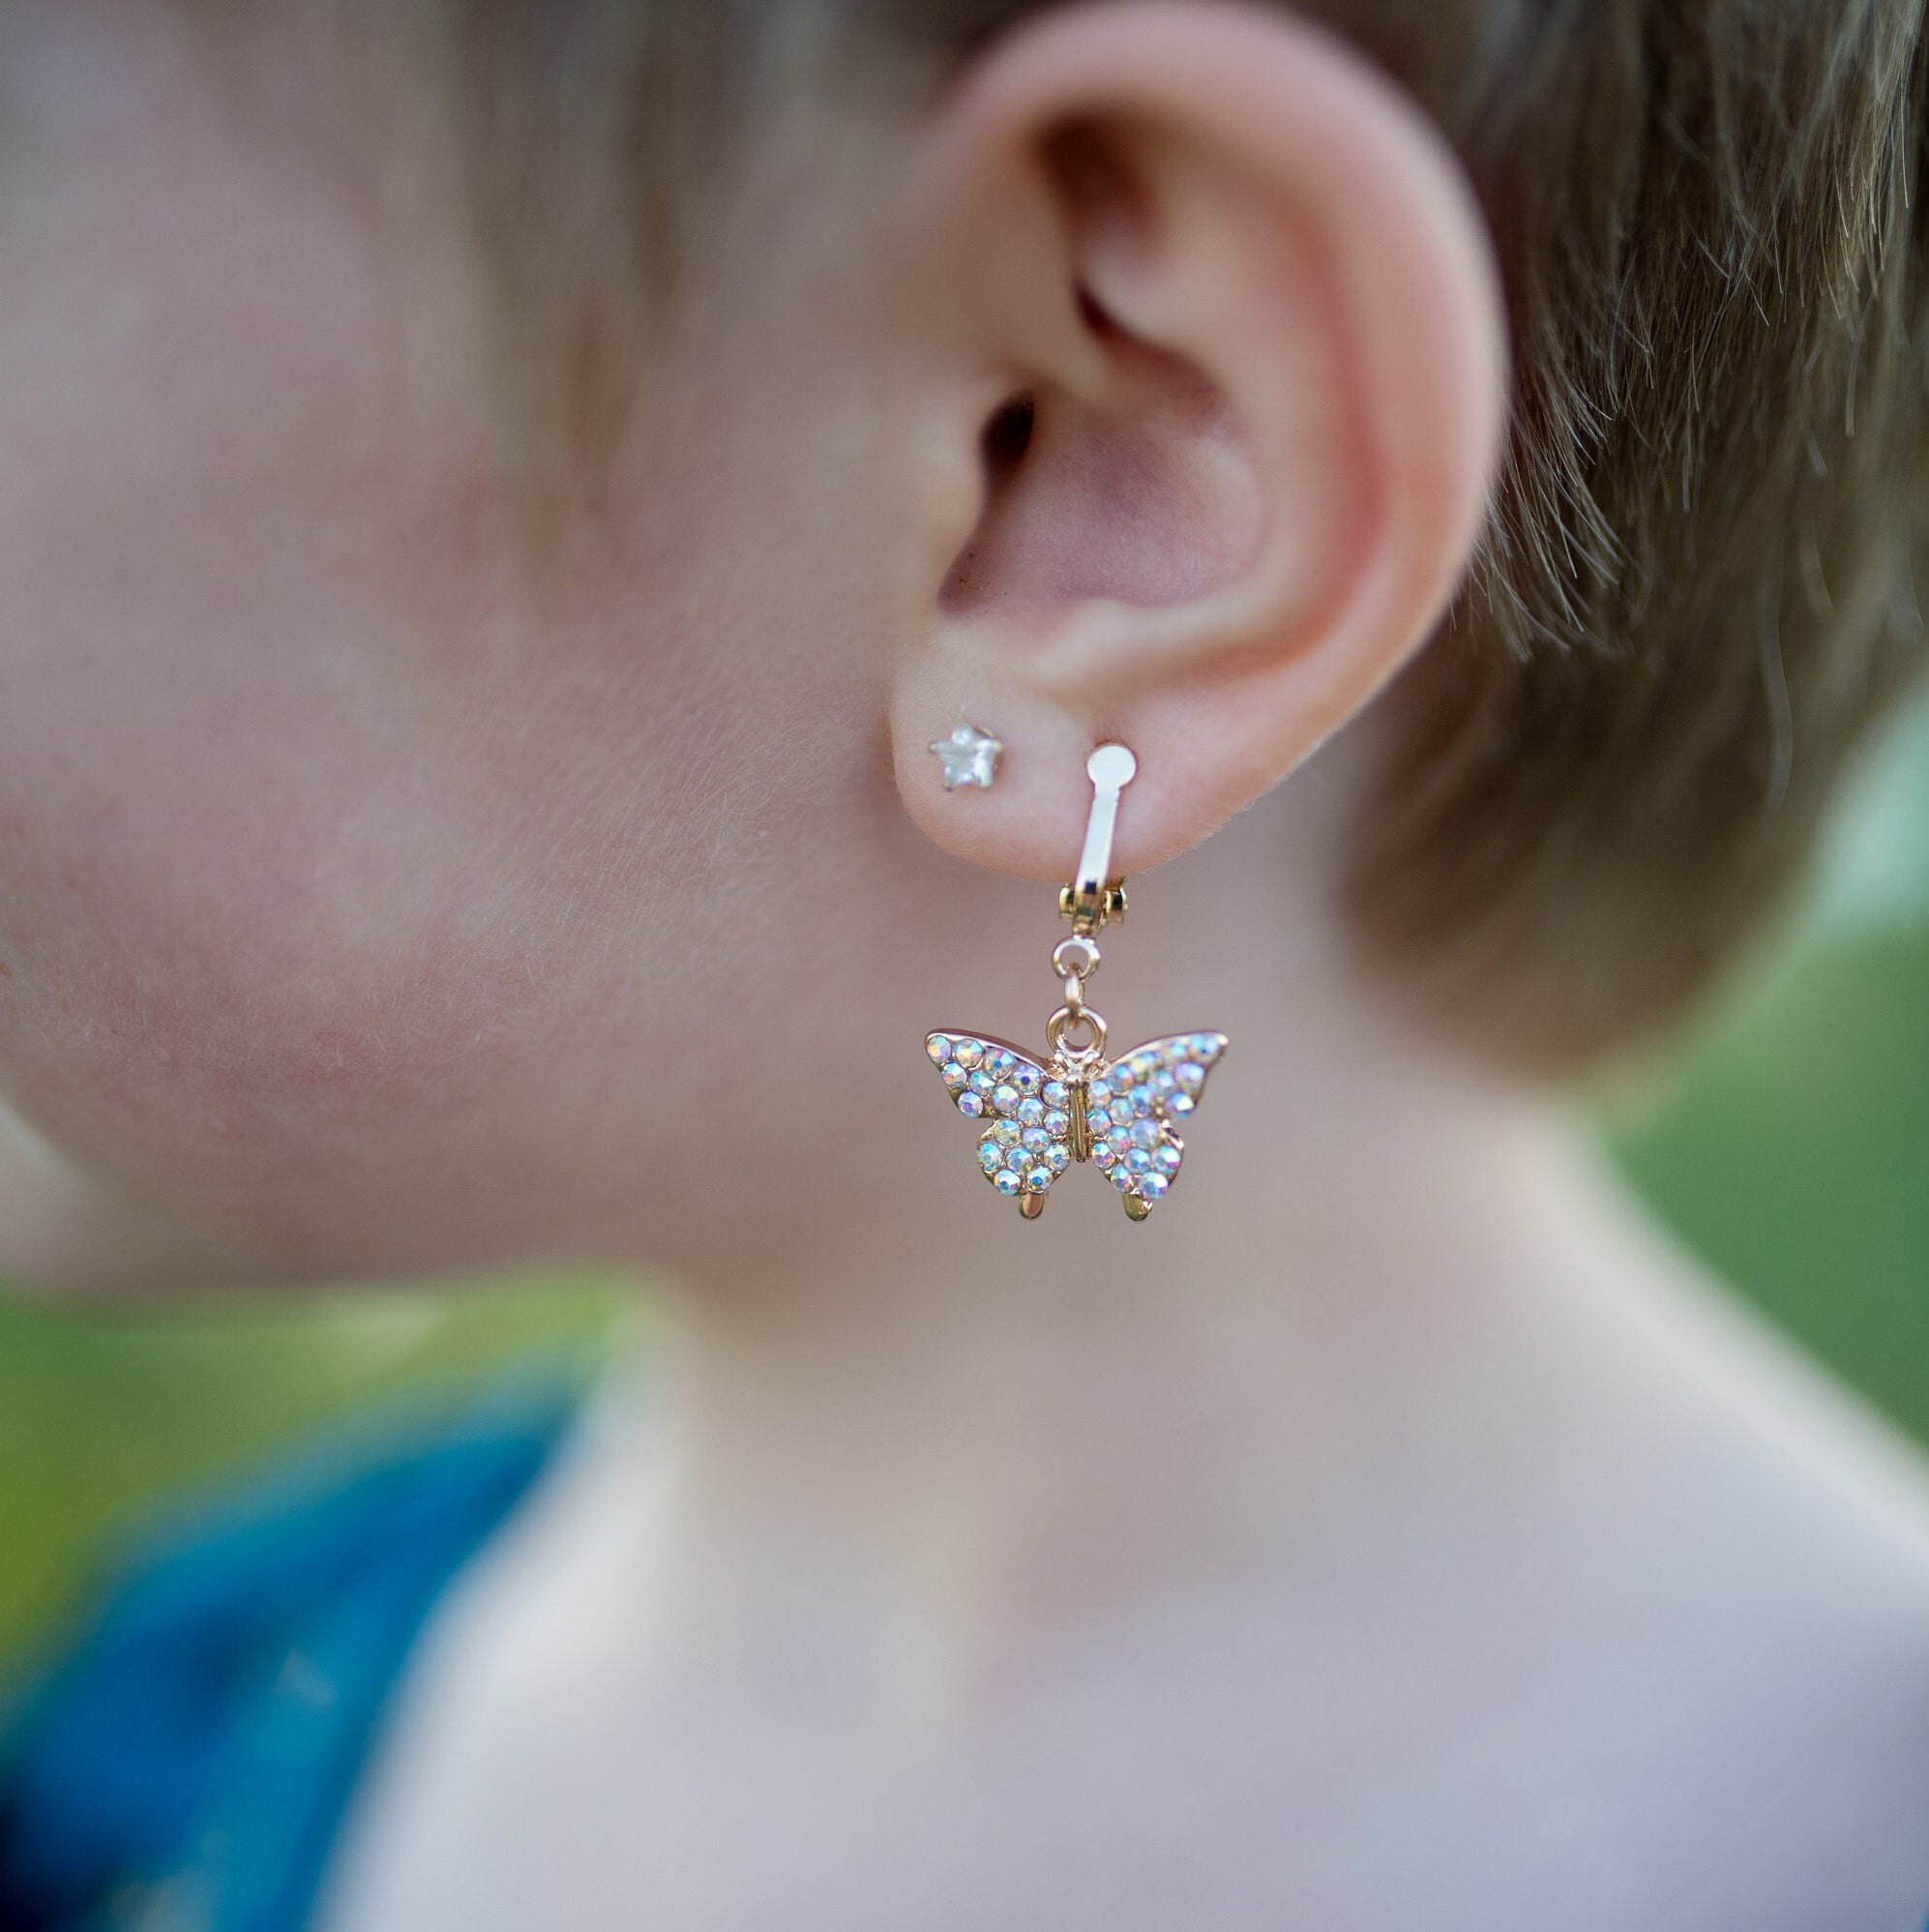 Rainbow Love Stick-On Earrings, Kids sticker earrings, kids jewelry for  unpierced ears, kids earrings